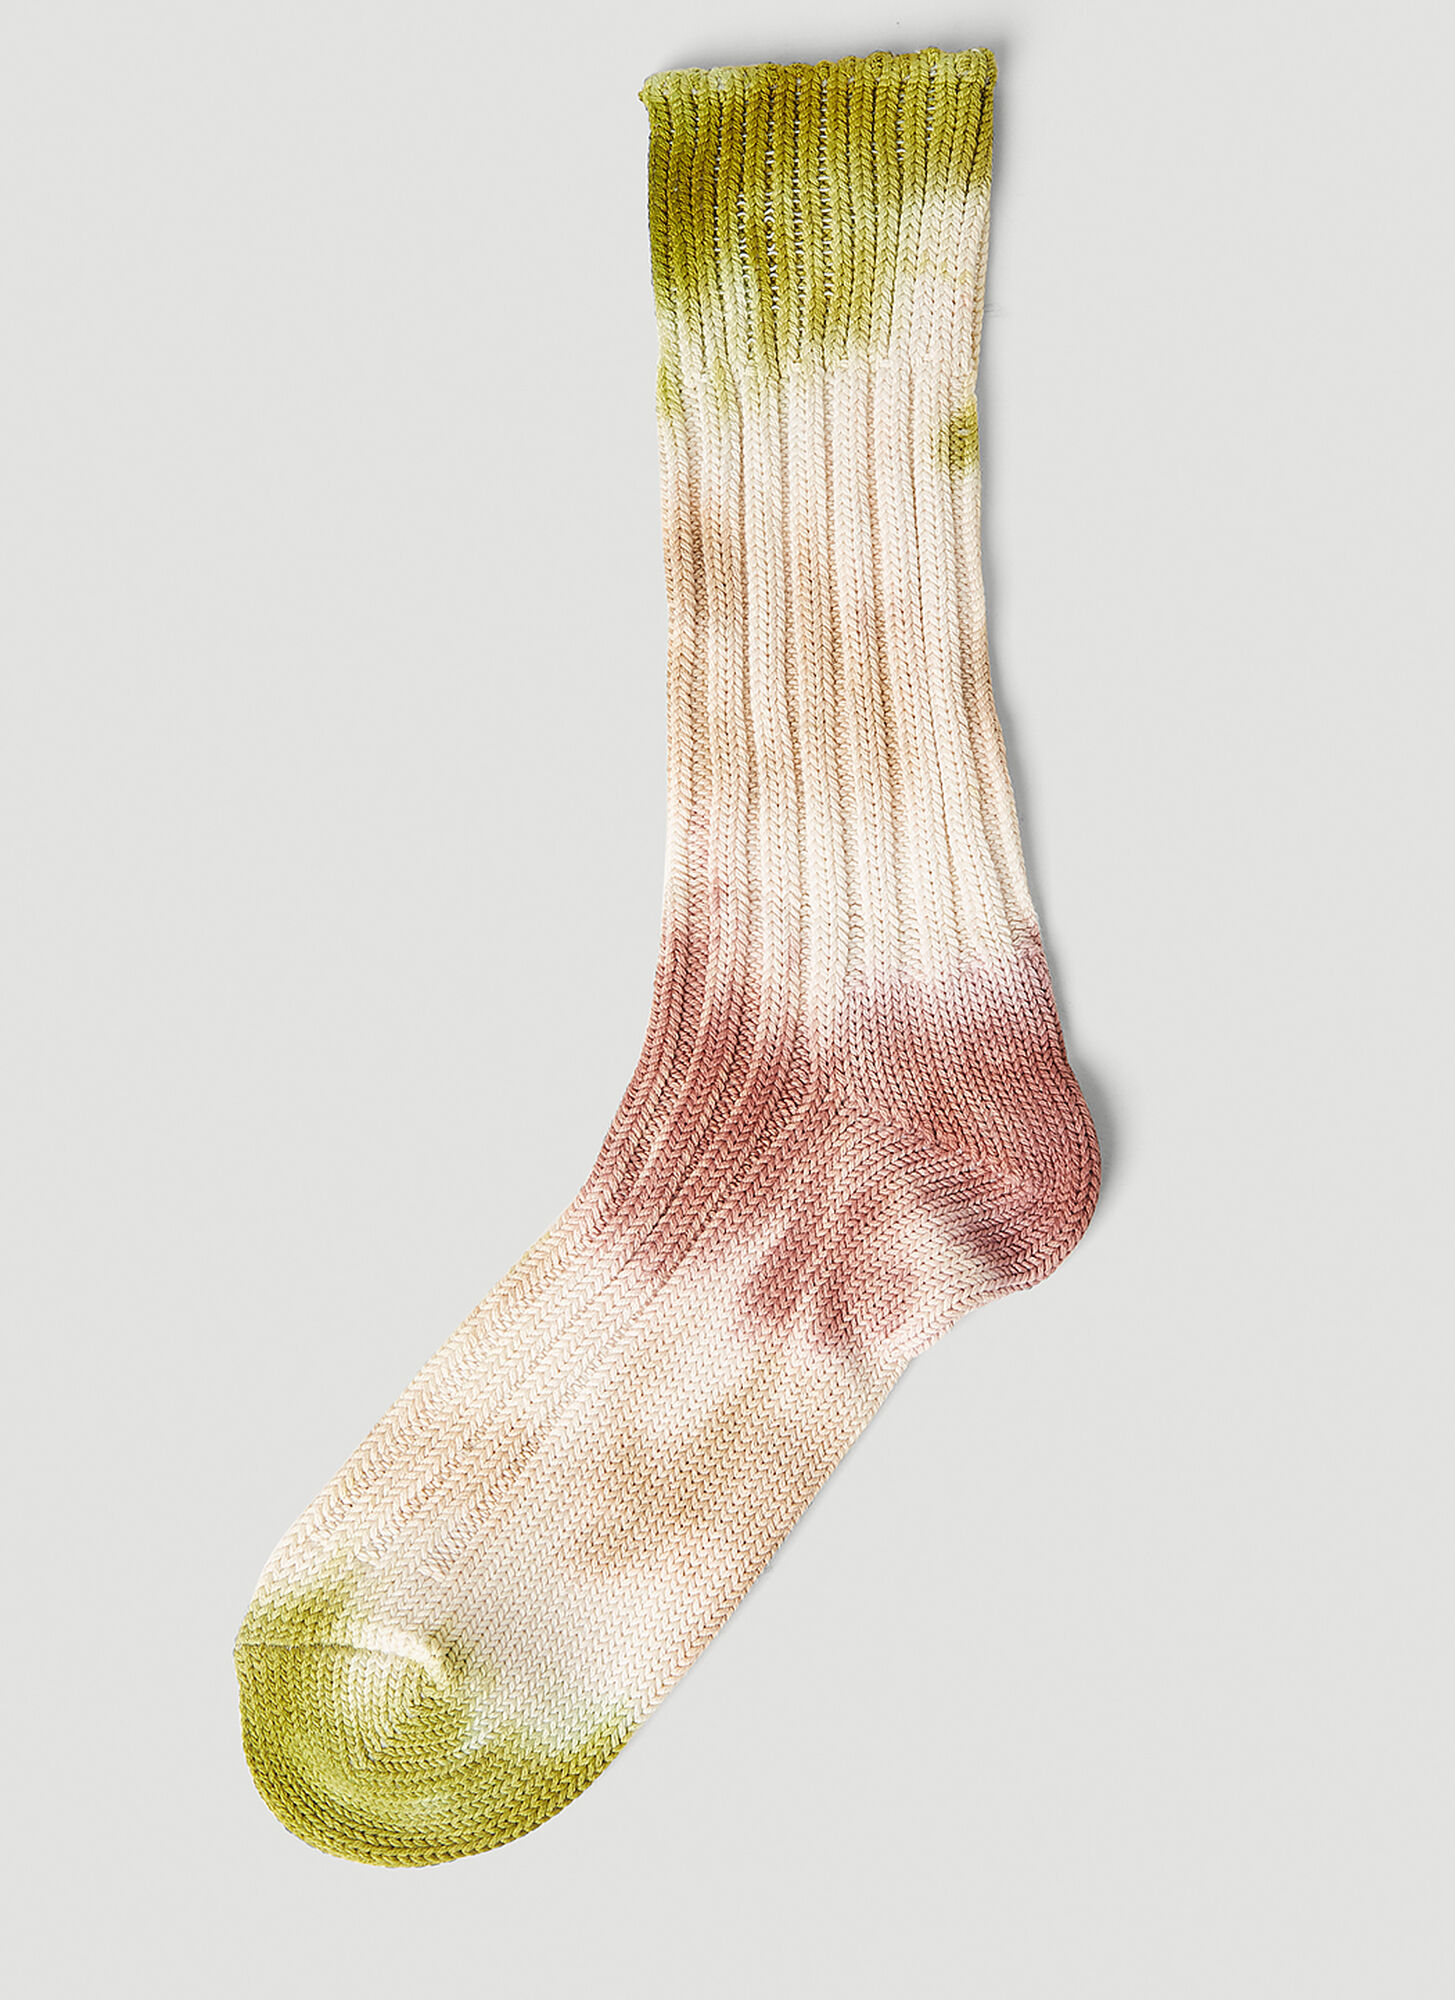 Stain Shade X Decka Socks Tie Dye Socks In Beige